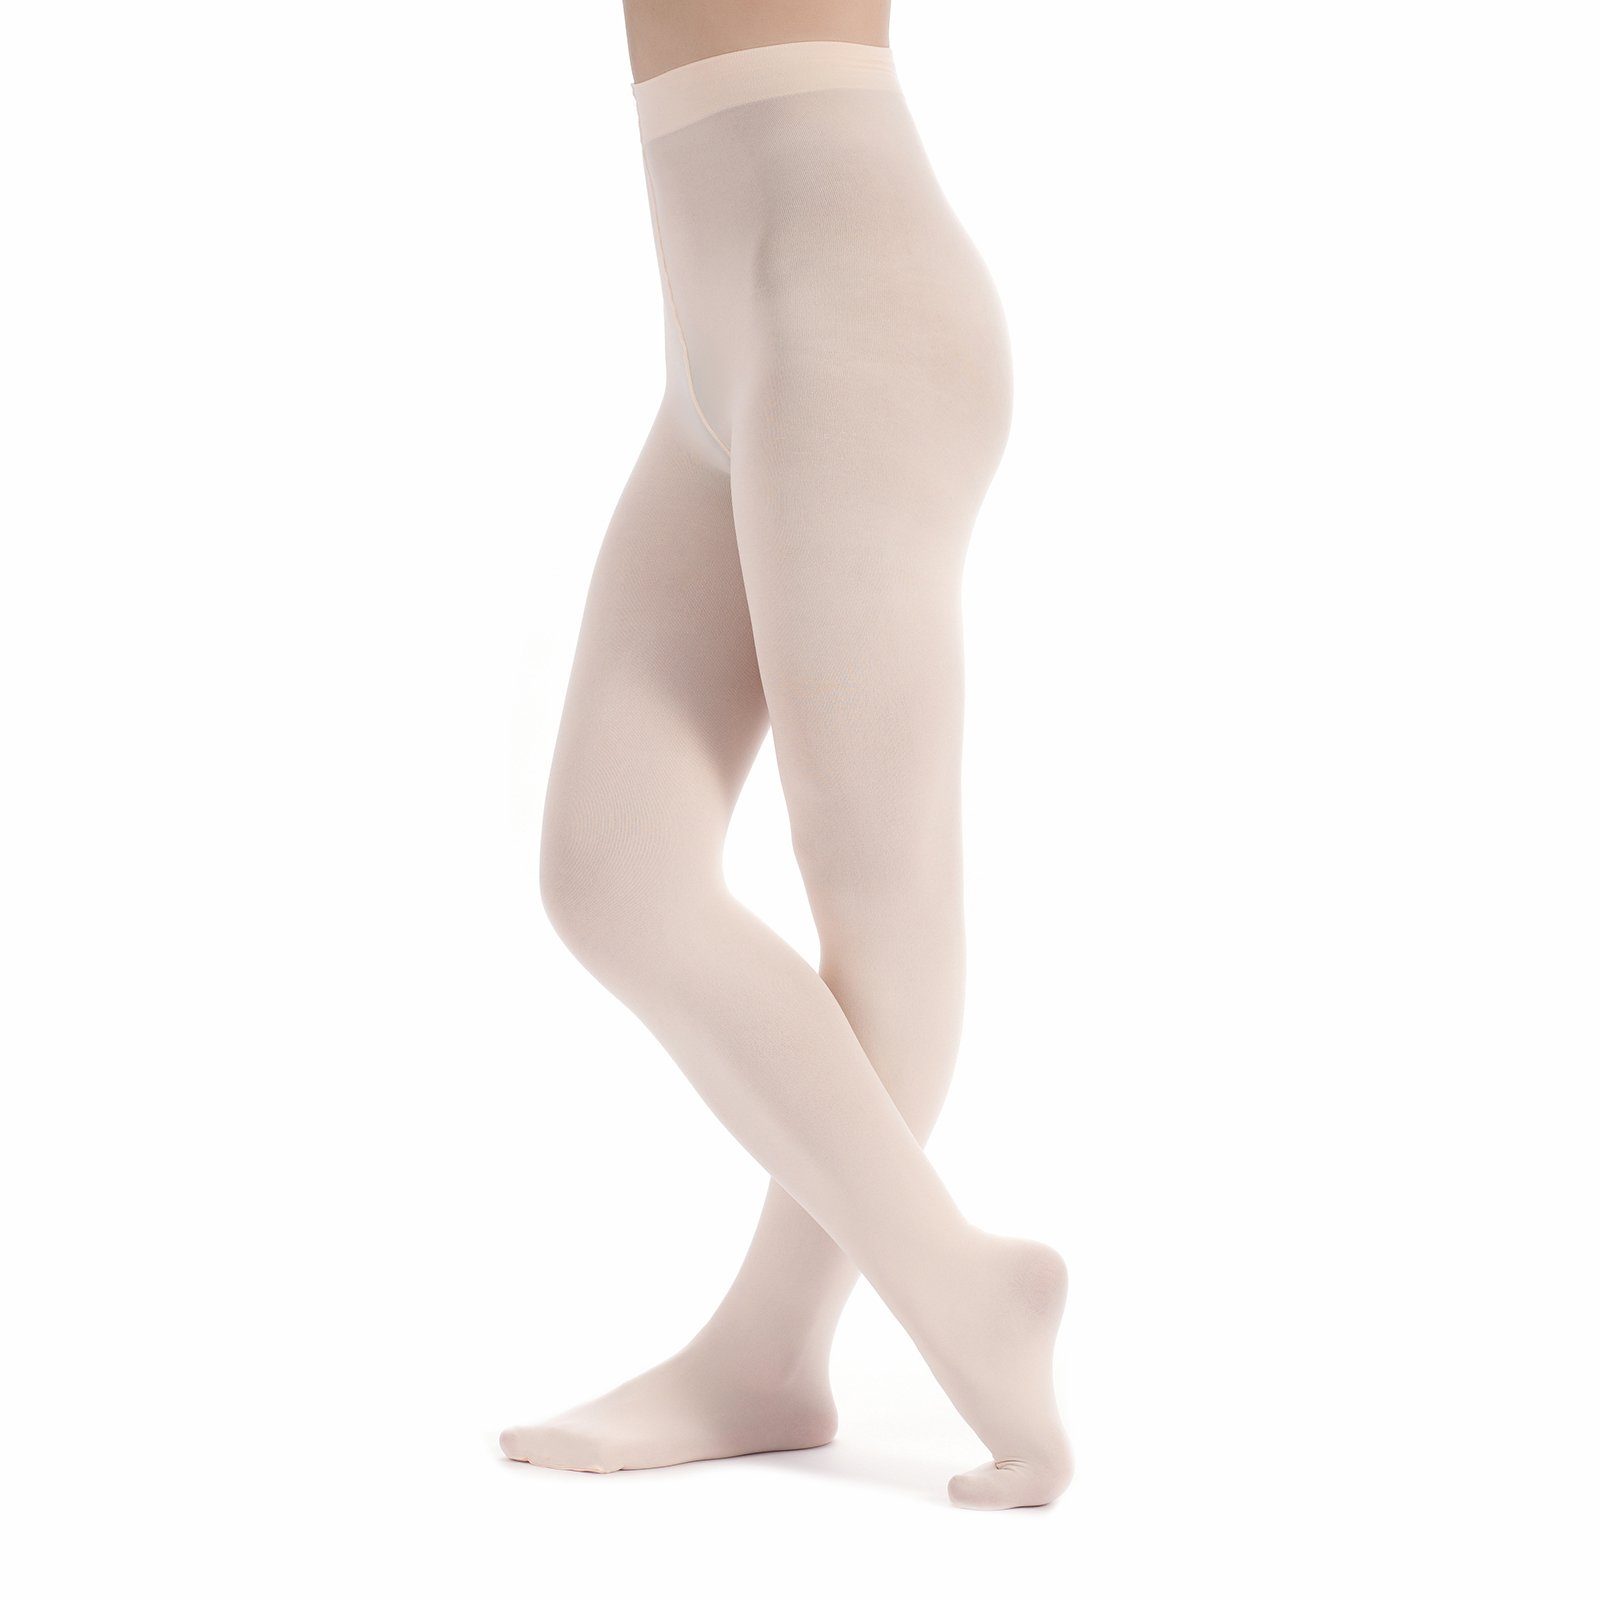 Kira Strumpfhose strapazierfähig und tanzmuster elastisch mit Ballettstrumpfhose ballett-rosa Damen Fuß weich, wunderbar